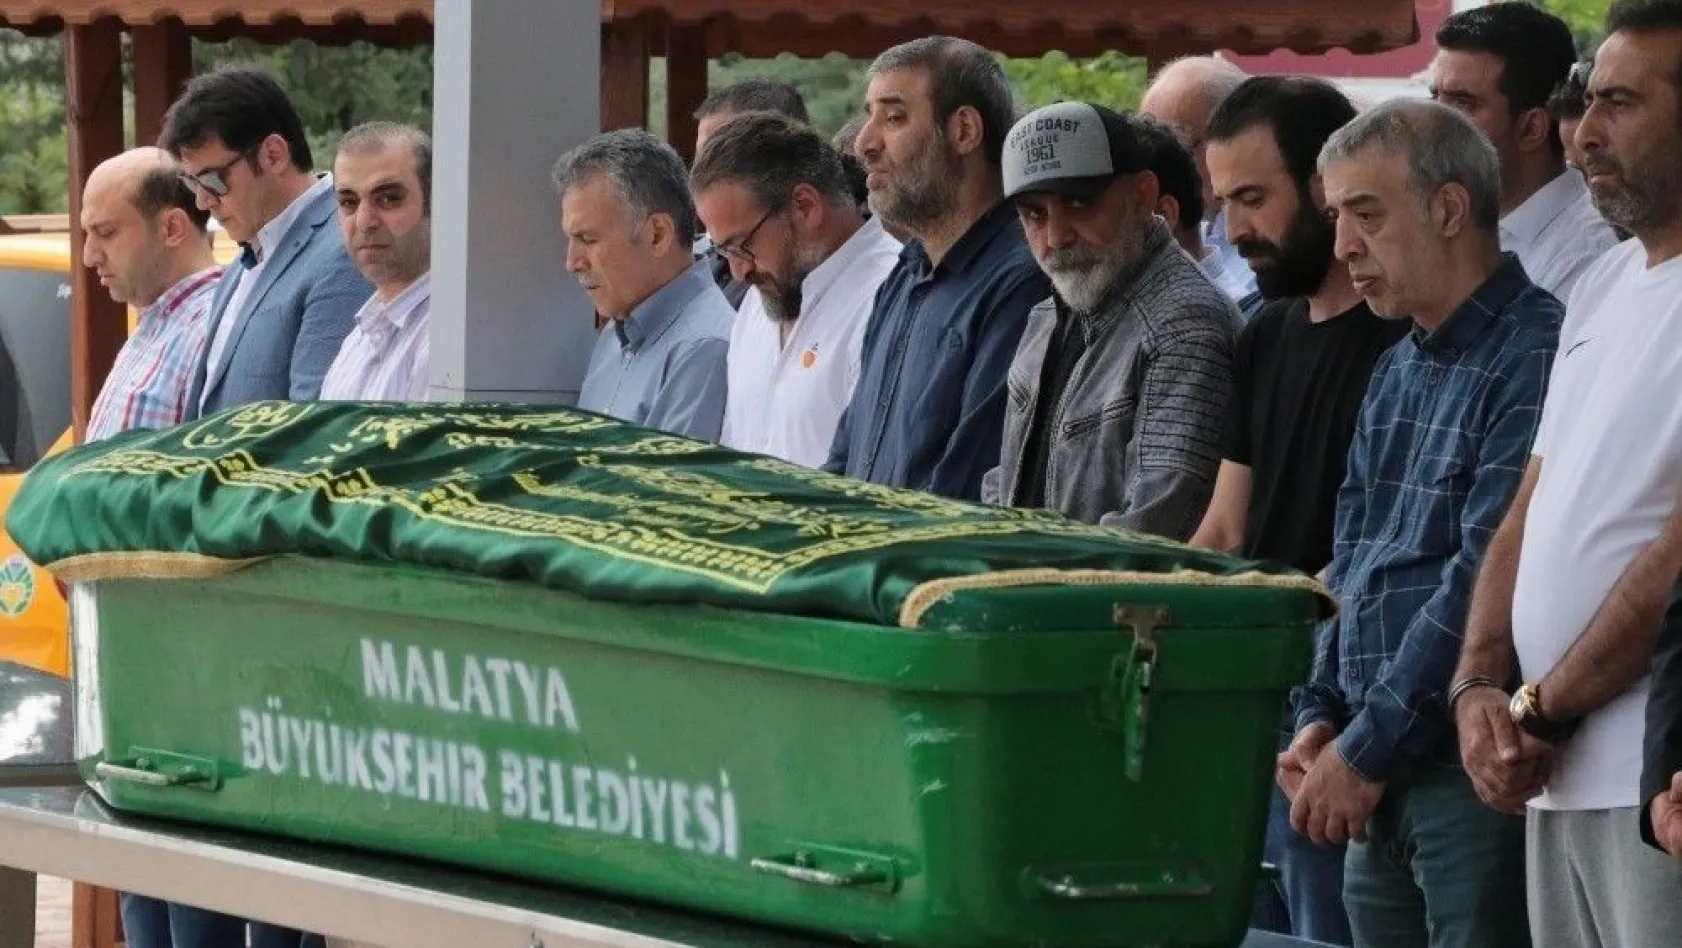 Malatyaspor'un eski kaptanı Hayati Palancı'nın baba acısı
